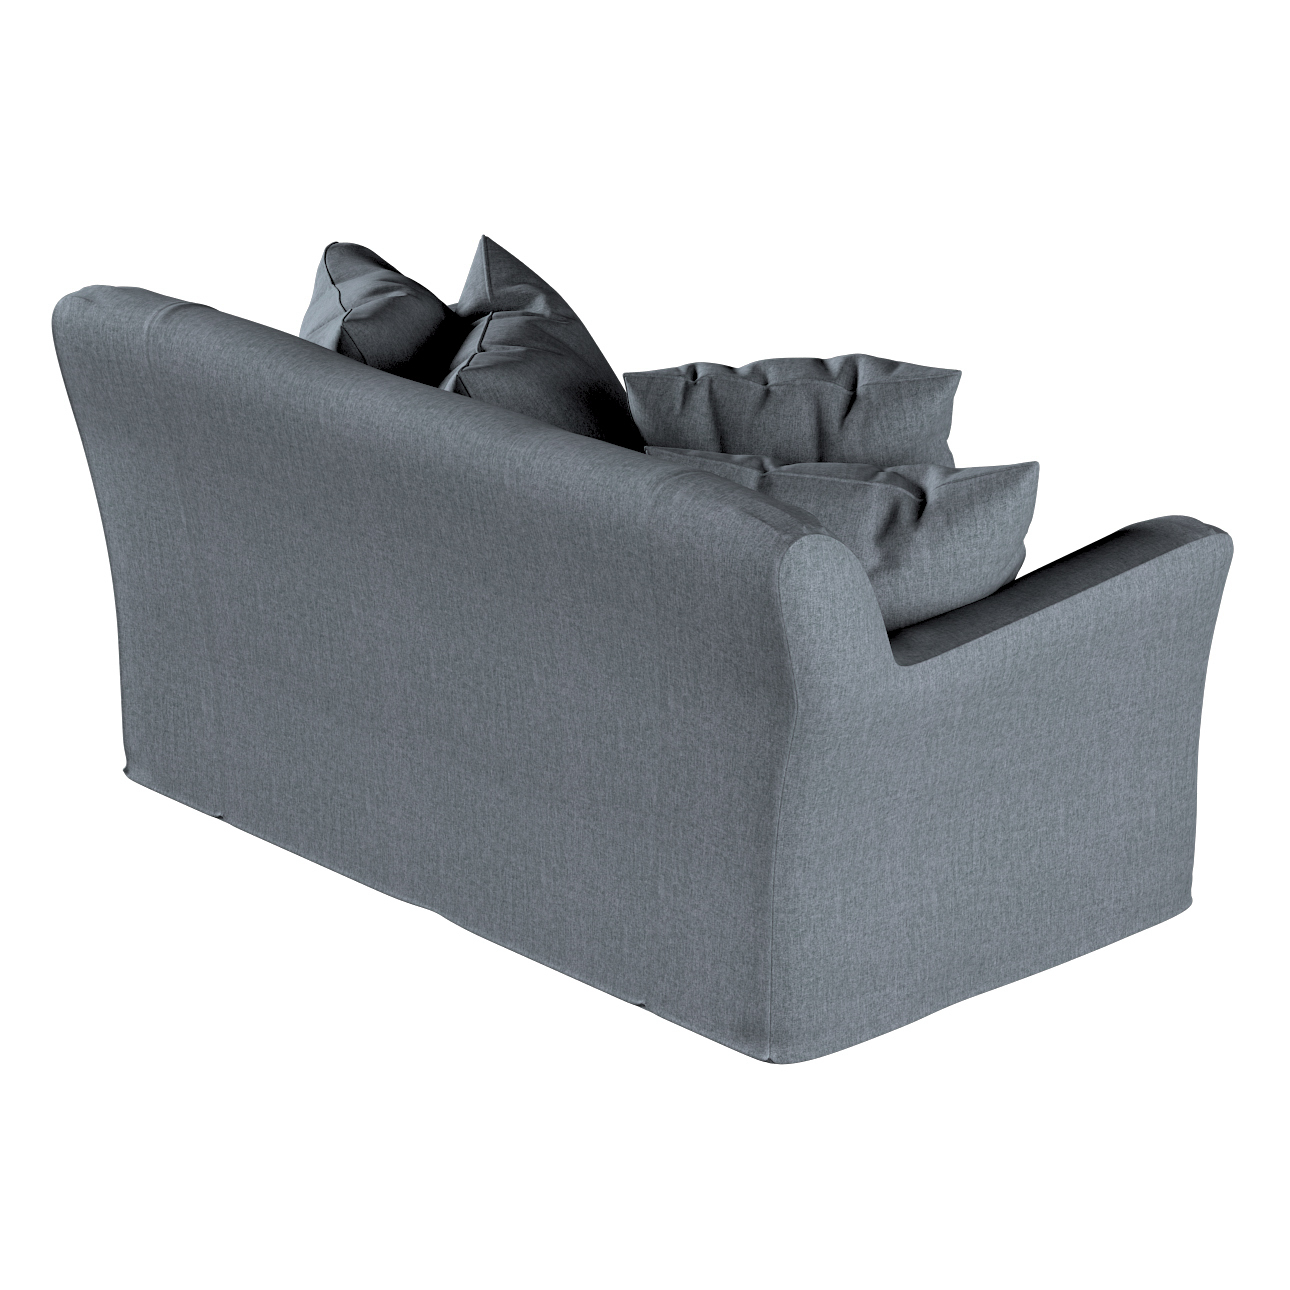 Bezug für Tomelilla 2-Sitzer Sofa nicht ausklappbar, grau, Sofahusse, Tomel günstig online kaufen